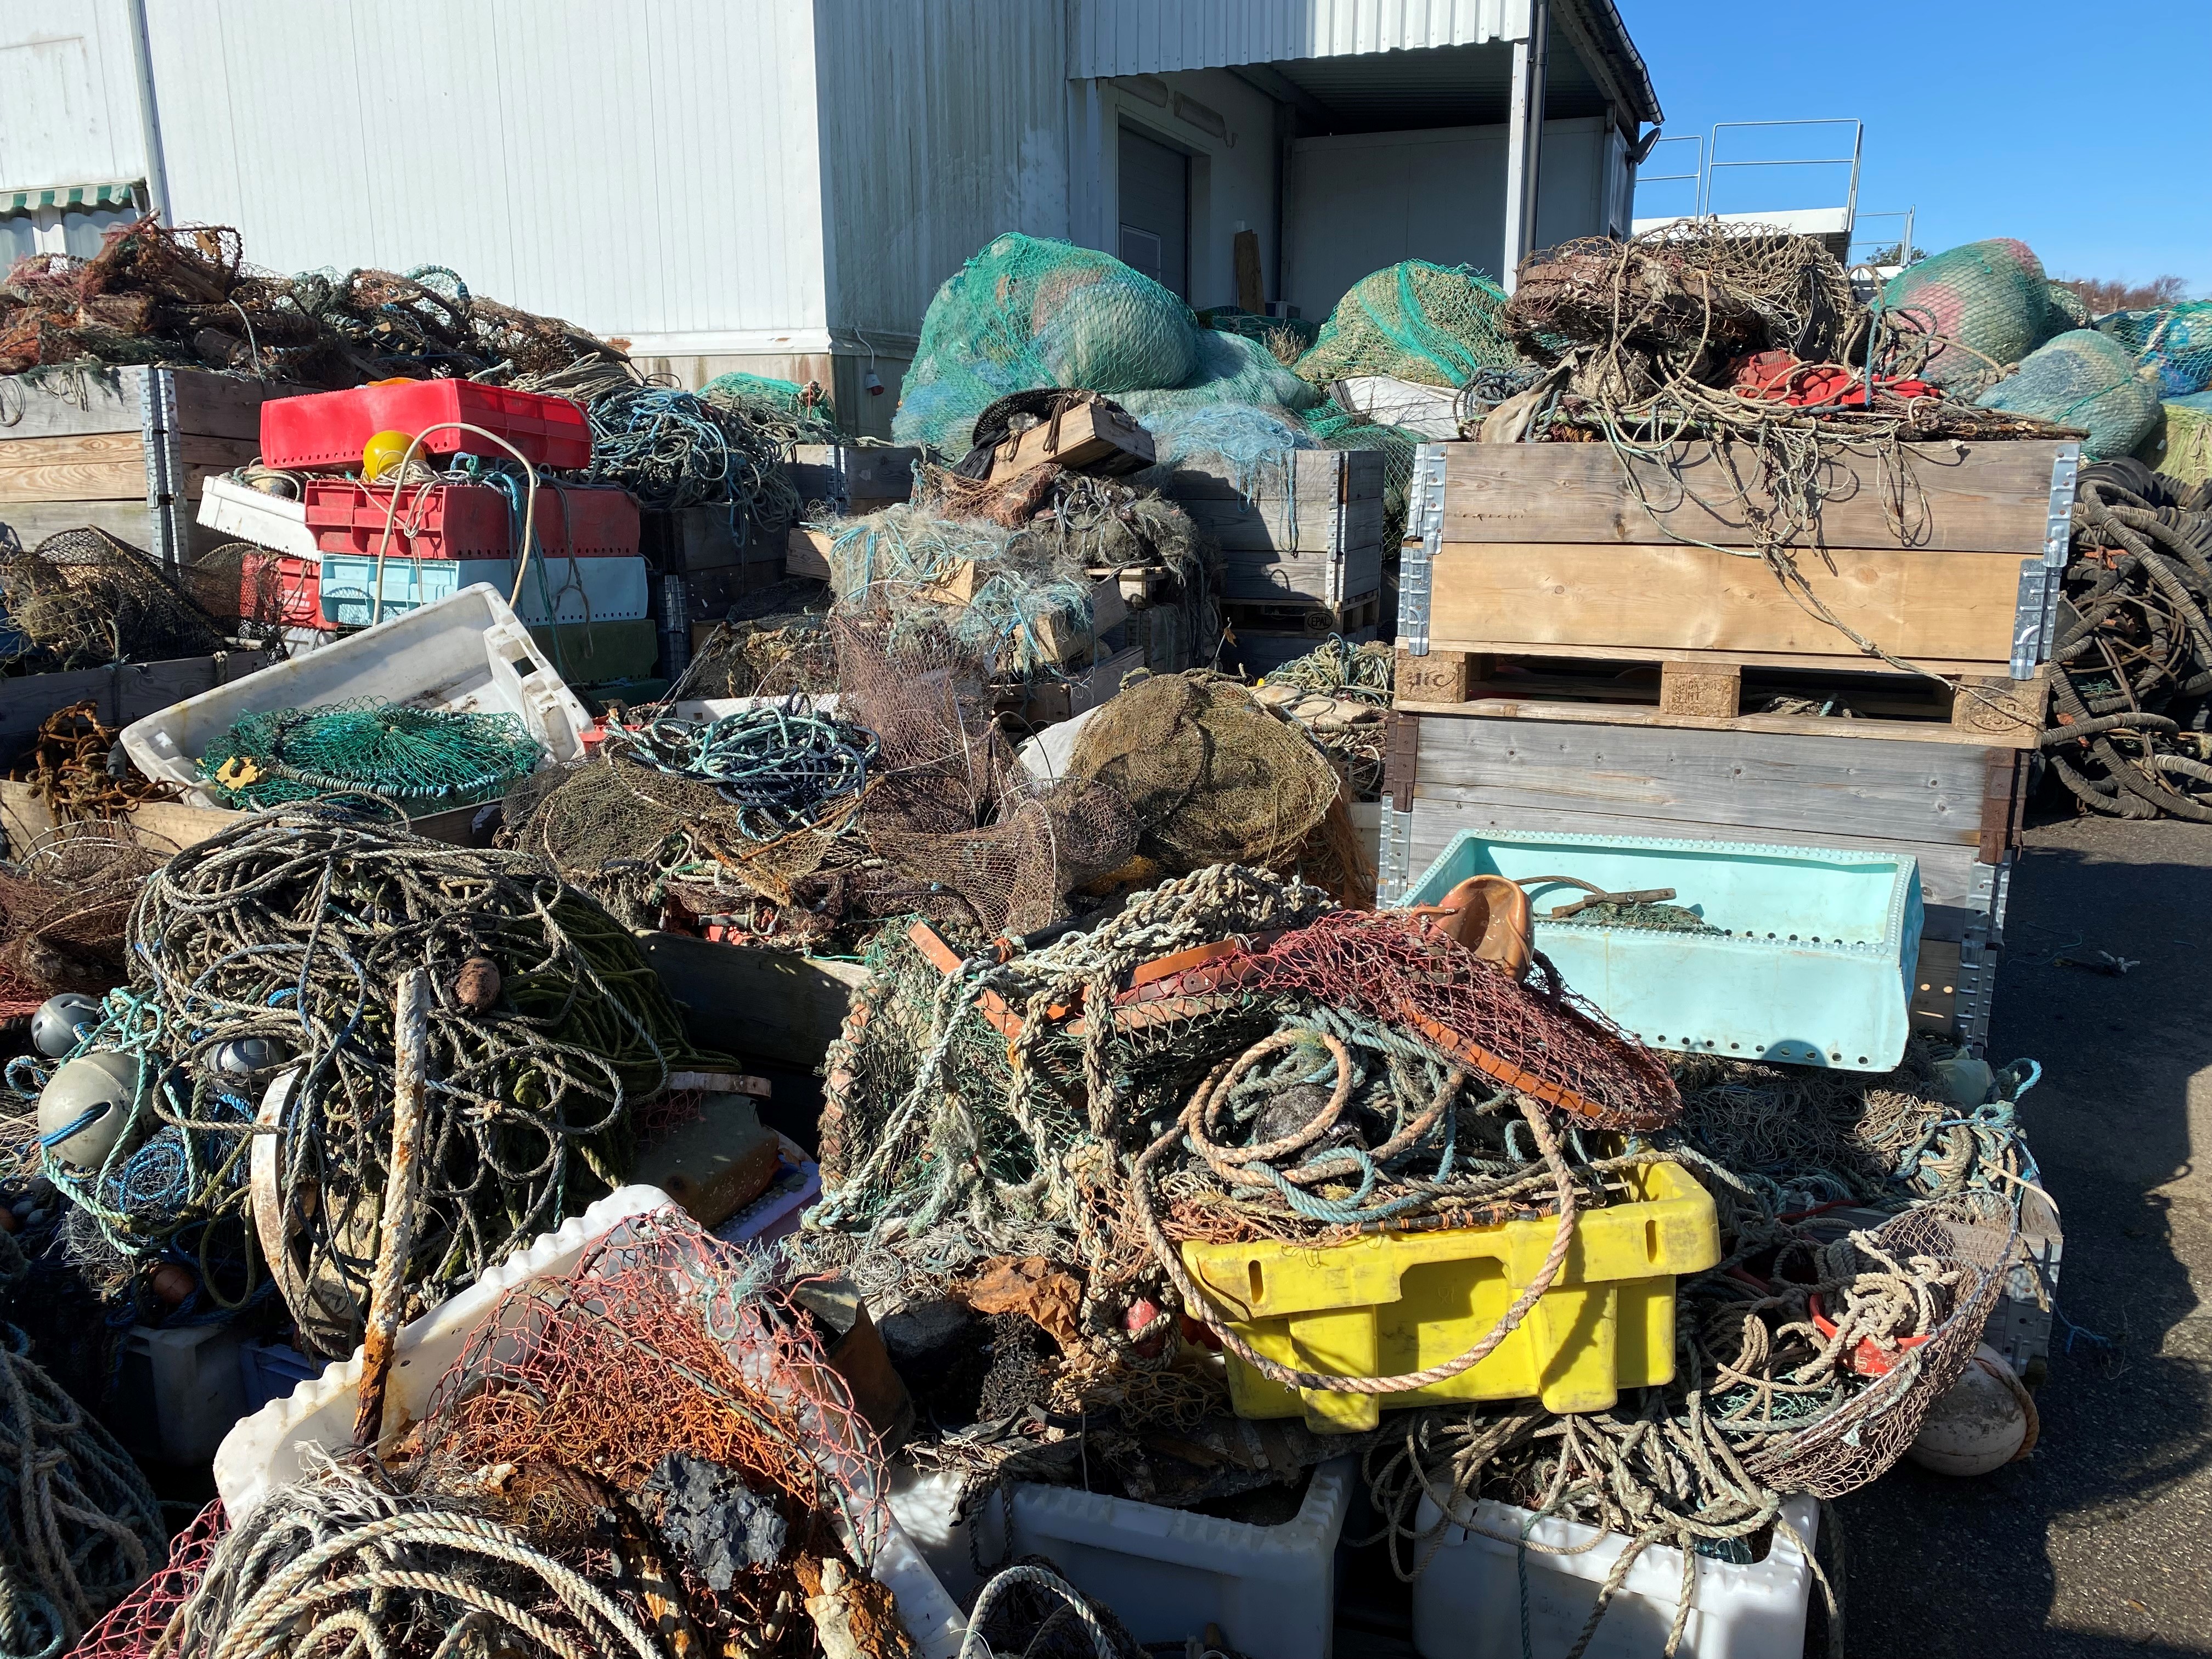 I Sotenäs kommun startades 2018 Sveriges första Marina återvinningscentral. Här tar man hand om marint avfall som samlats in från strandstädning, uttjänta fiskeredskap från fiskeindustrin samt spökfiskenät och burar som samlats in från havet.